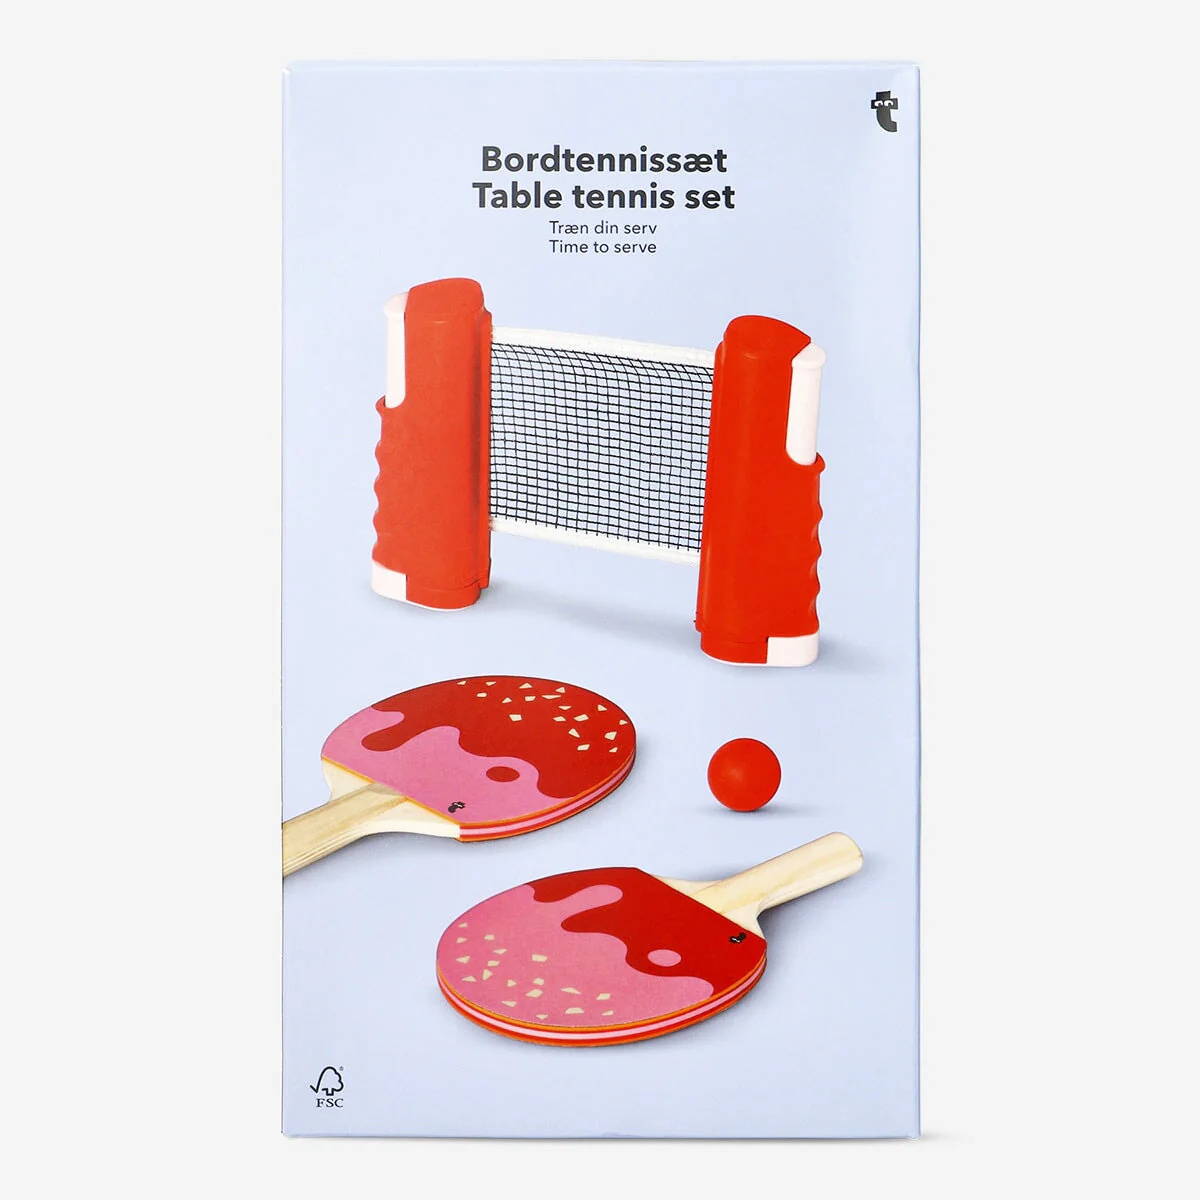 Czerwone i różowe łopatki do tenisa stołowego z mini siatką i czerwoną piłką, zapakowane w pudełko, na jasnoniebieskim tle.